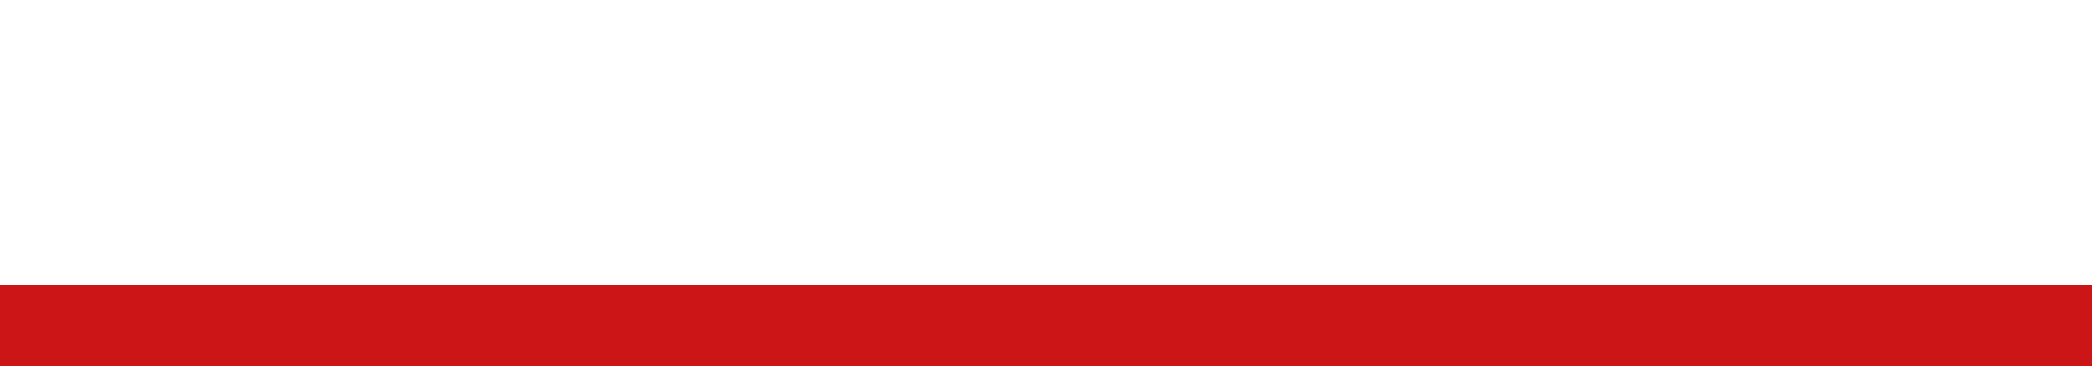 SECUR-DOR logo